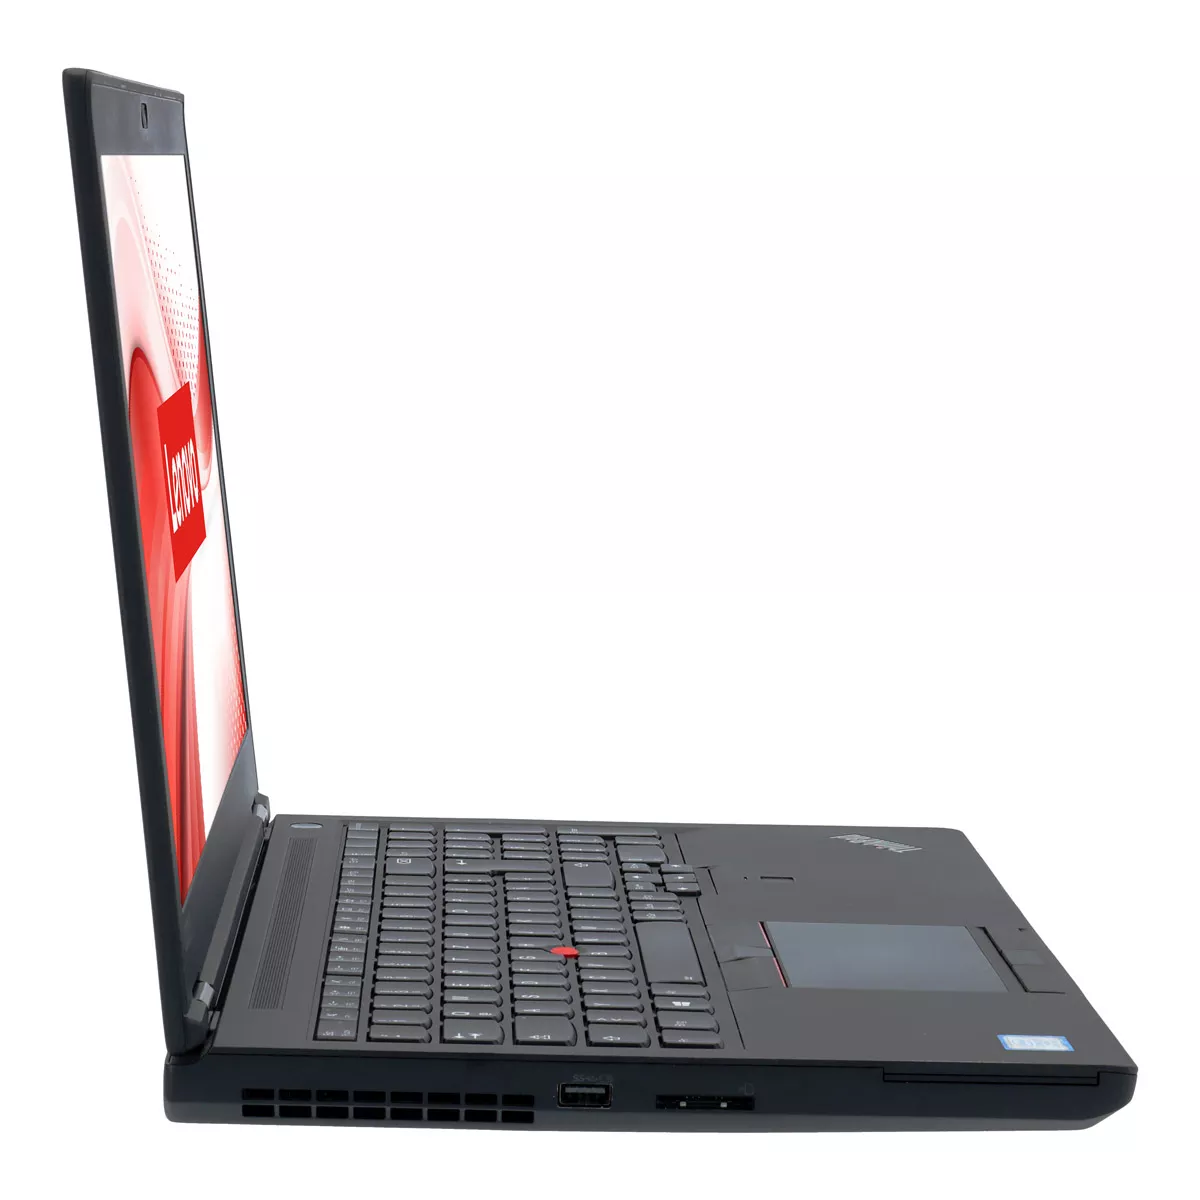 Lenovo ThinkPad P52 Core i7 8750H nVidia Quadro P1000M 32 GB 500 GB M.2 SSD Webcam A